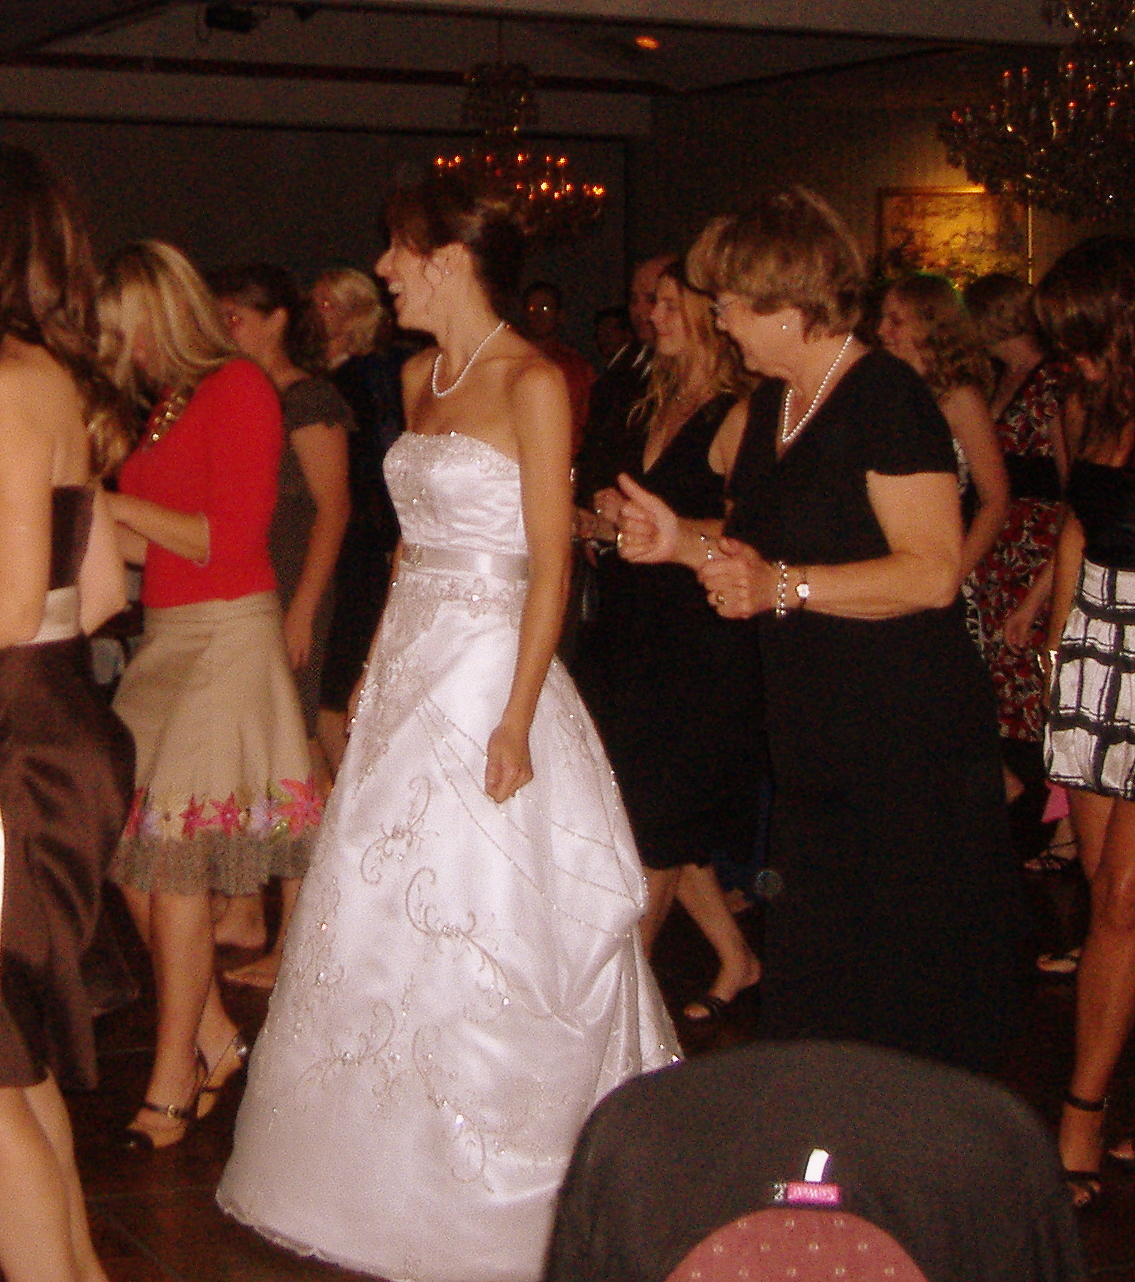 [Kelly+Flynn's+wedding+-+dancing.JPG]